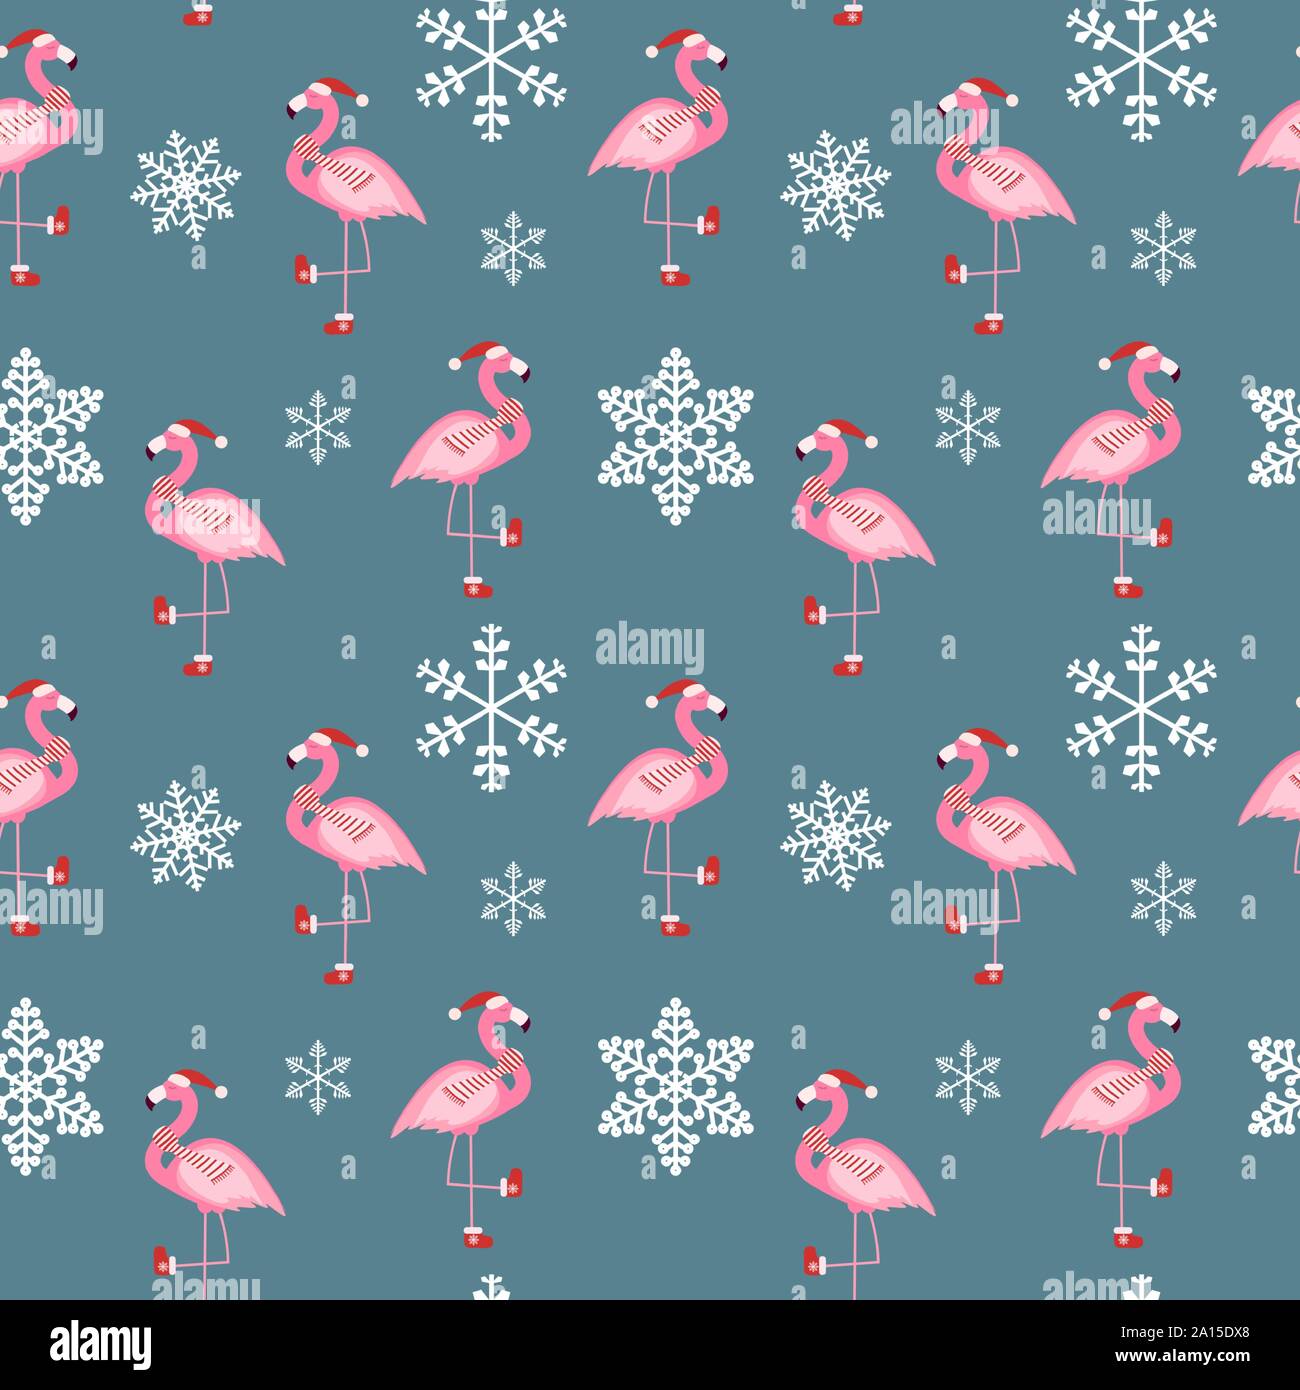 Bạn đang tìm kiếm mẫu hoa văn dễ thương để trang trí cho nhà vào dịp Giáng sinh? Mẫu hoa văn hồng Flamingo sẽ là một sự lựa chọn hoàn hảo! Những hoa văn này sẽ đem đến sự tinh tế, dịu mát và lãng mạn cho không gian của bạn.